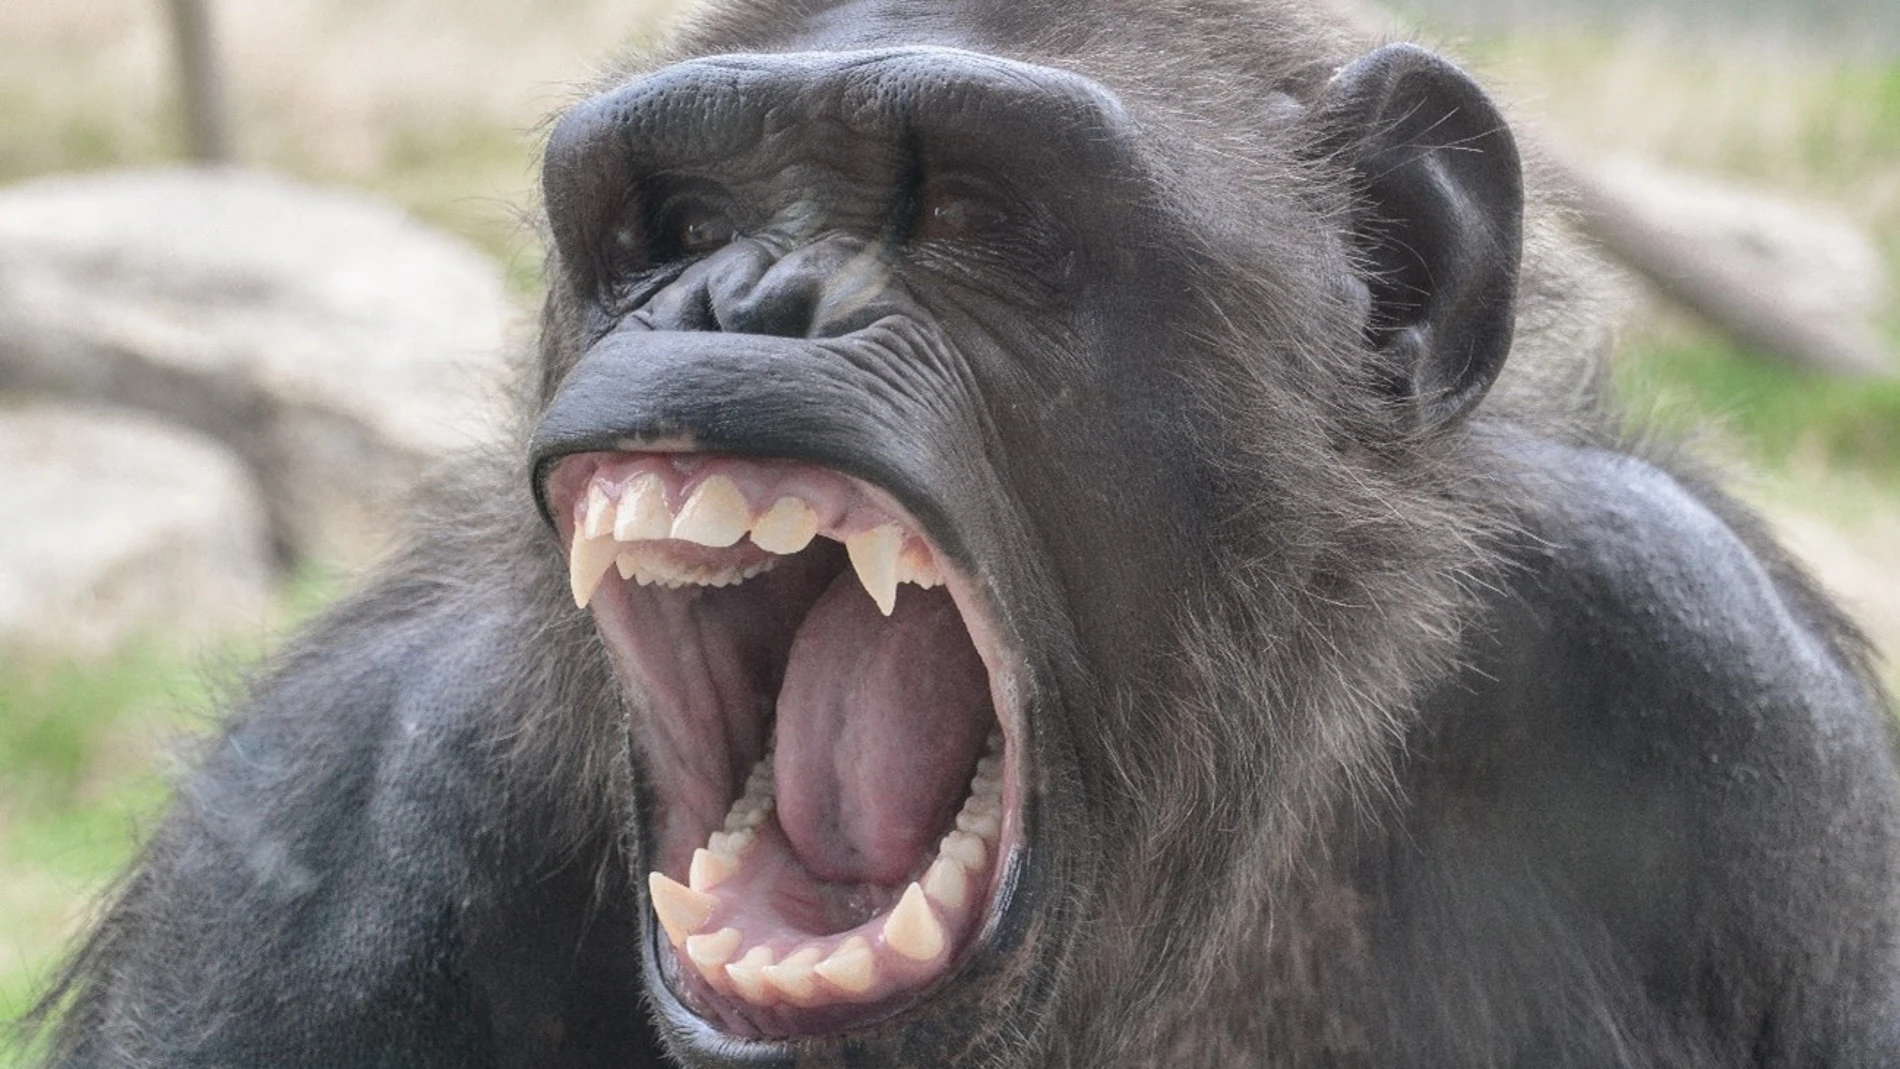 Foto de Ash, una hembra de chimpancé en pleno bostezo (no mantiene una actitud agresiva a pesar de lo que pueda parecer)